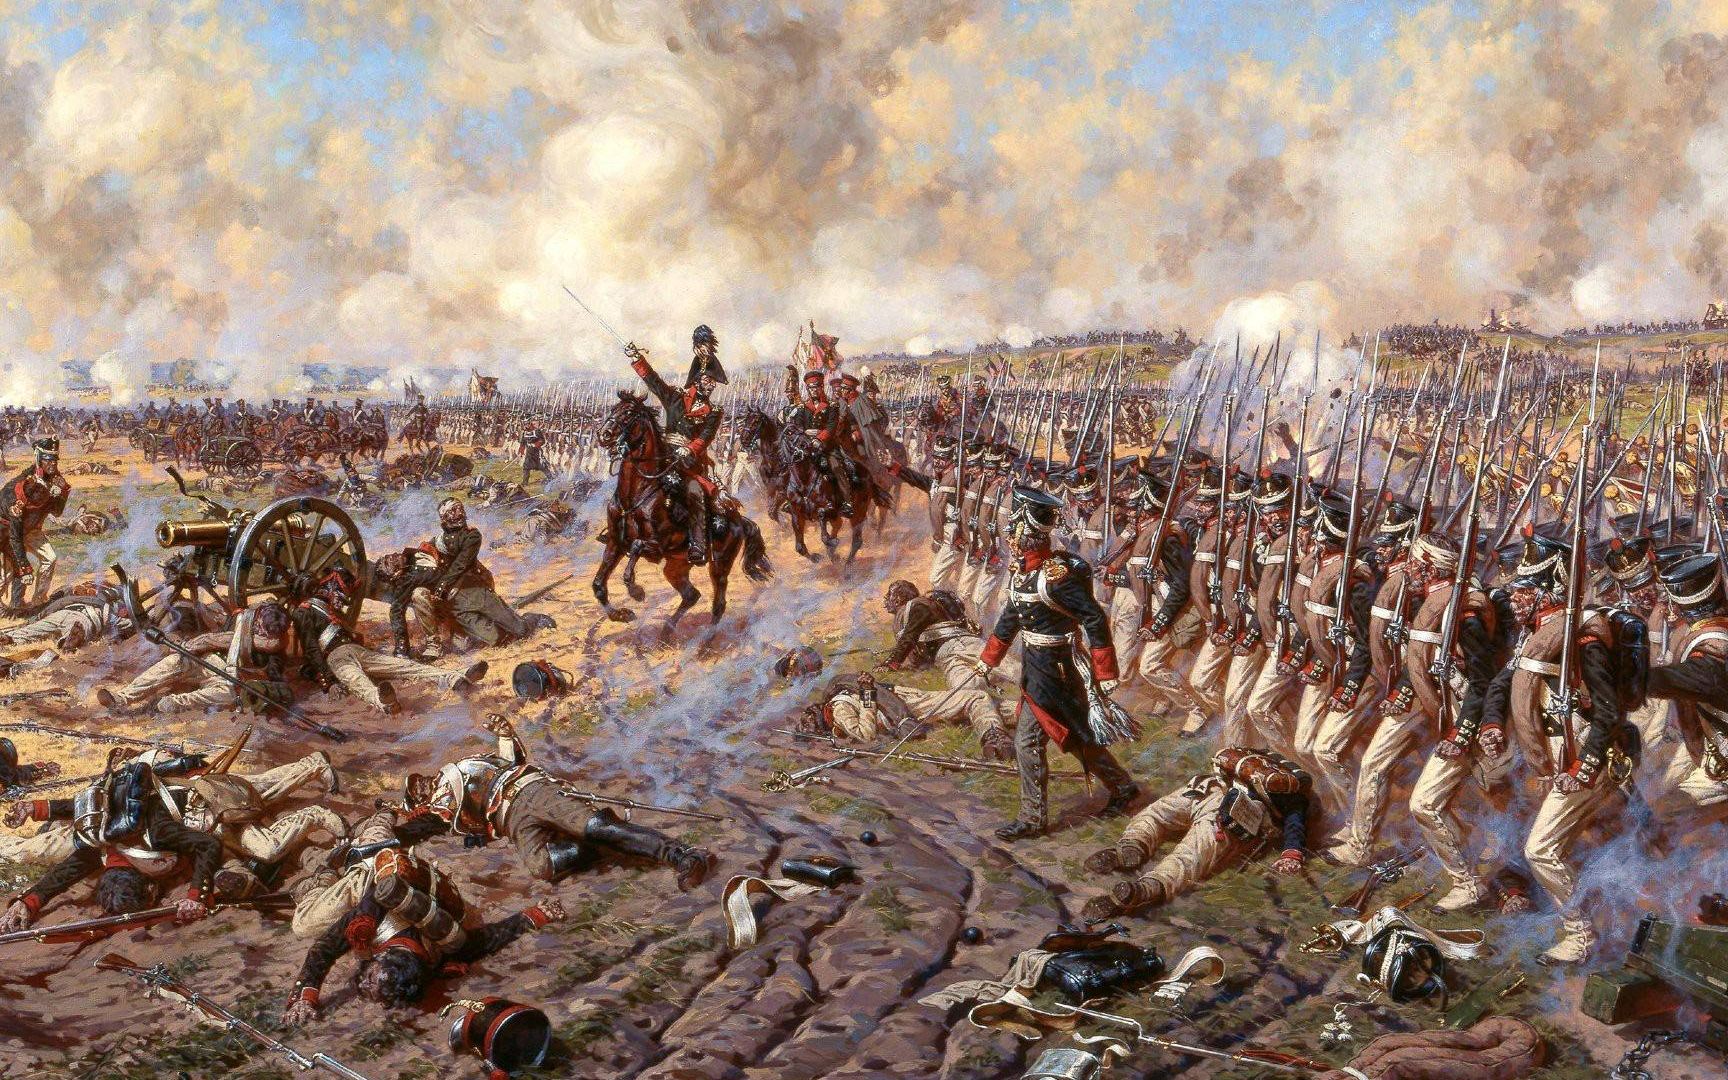 【拿破仑军事学院】骑马与砍杀:拿破仑战争 领军模式 法兰西力挽狂澜